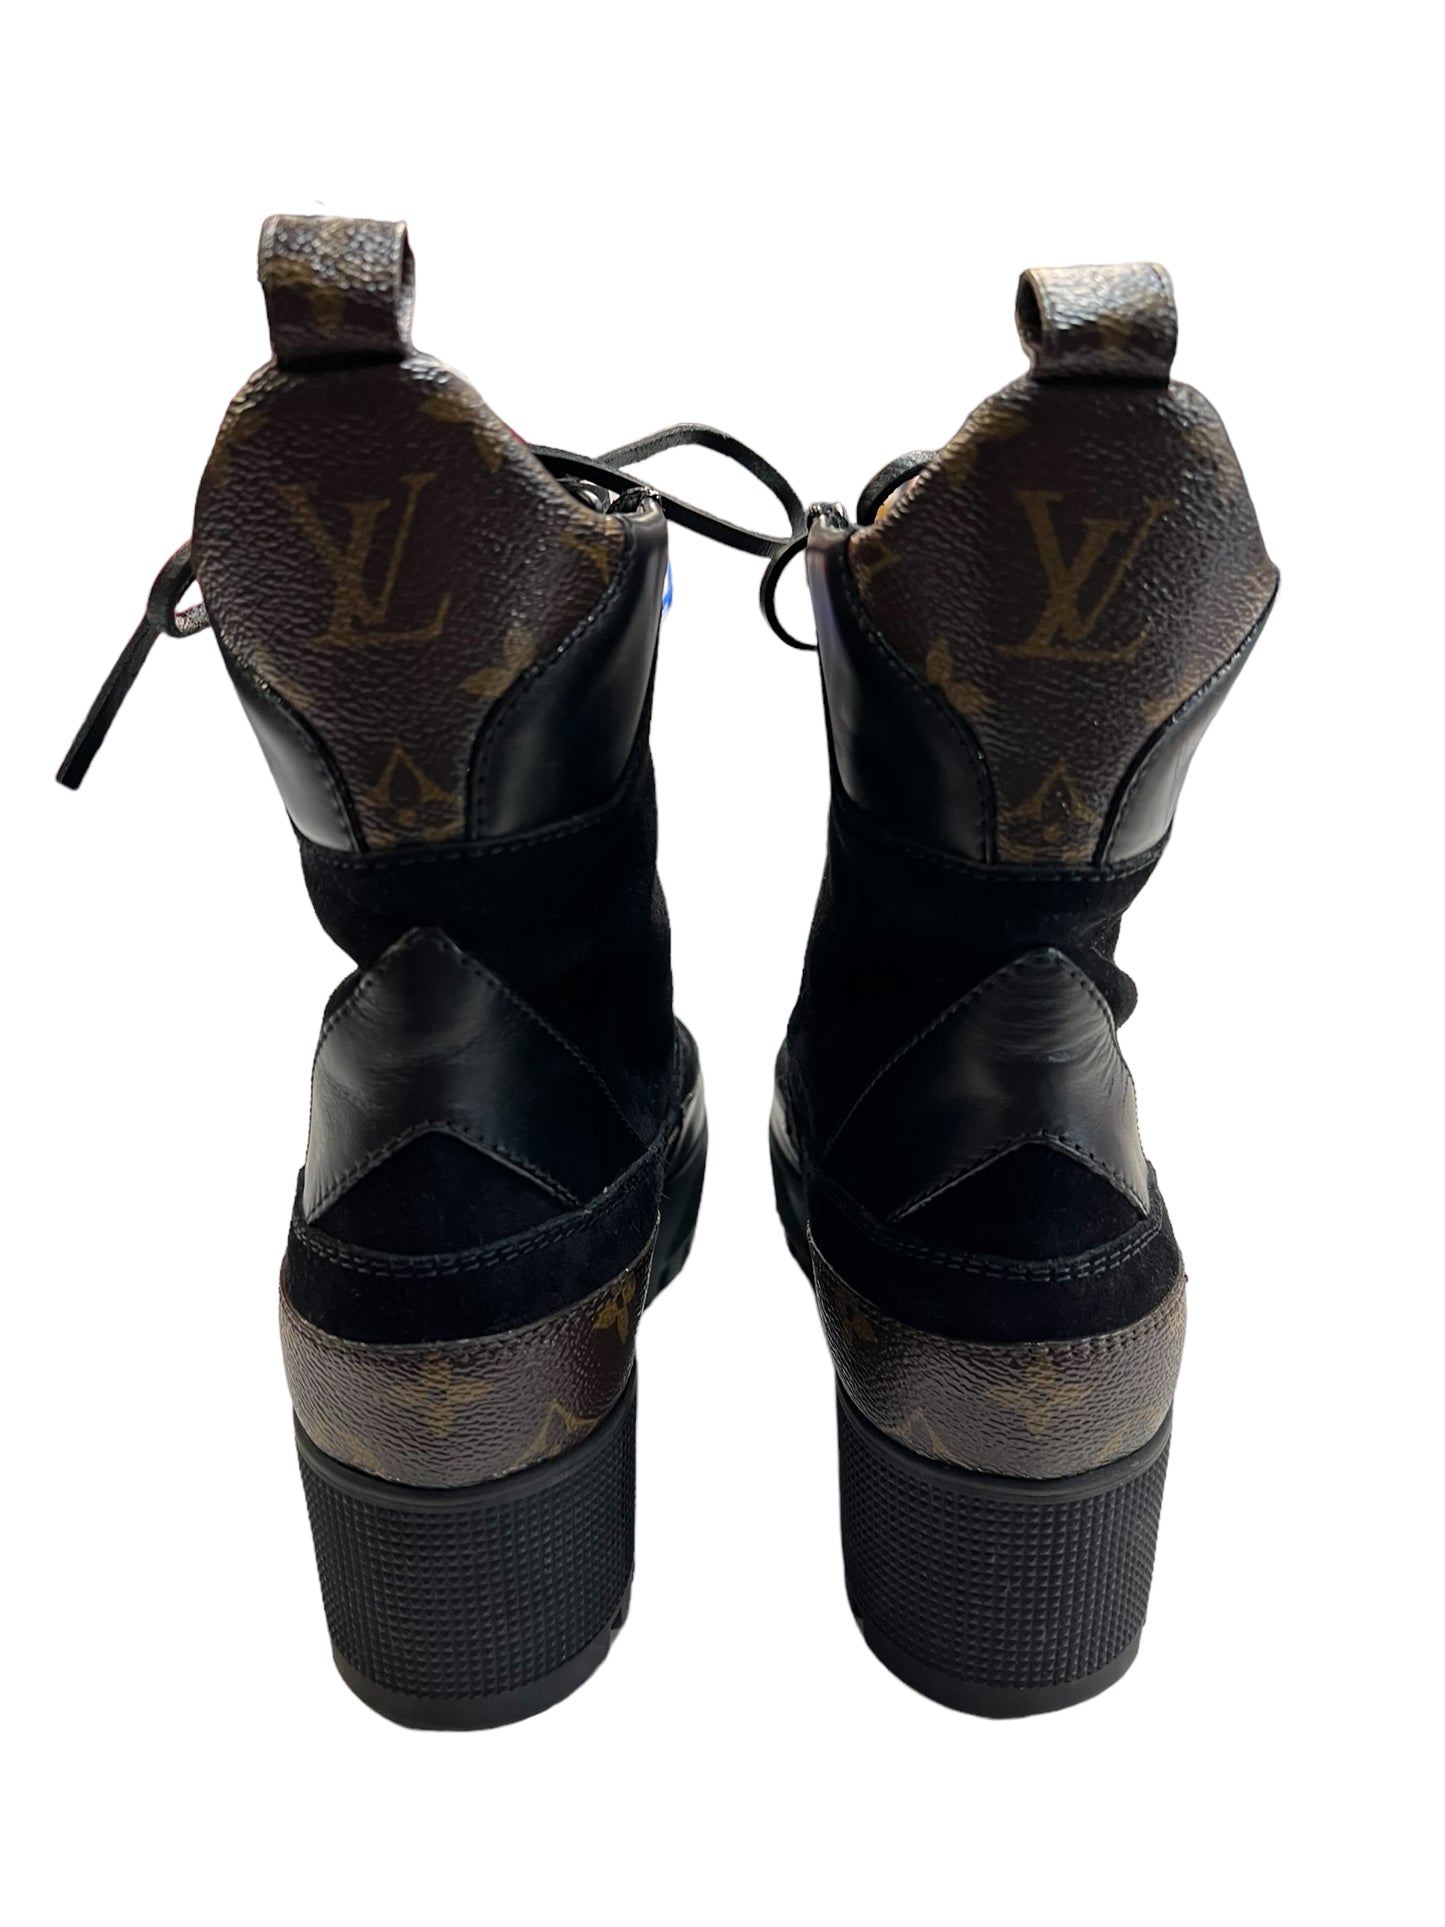 Boots Luxury Designer By Louis Vuitton  Size: EU38